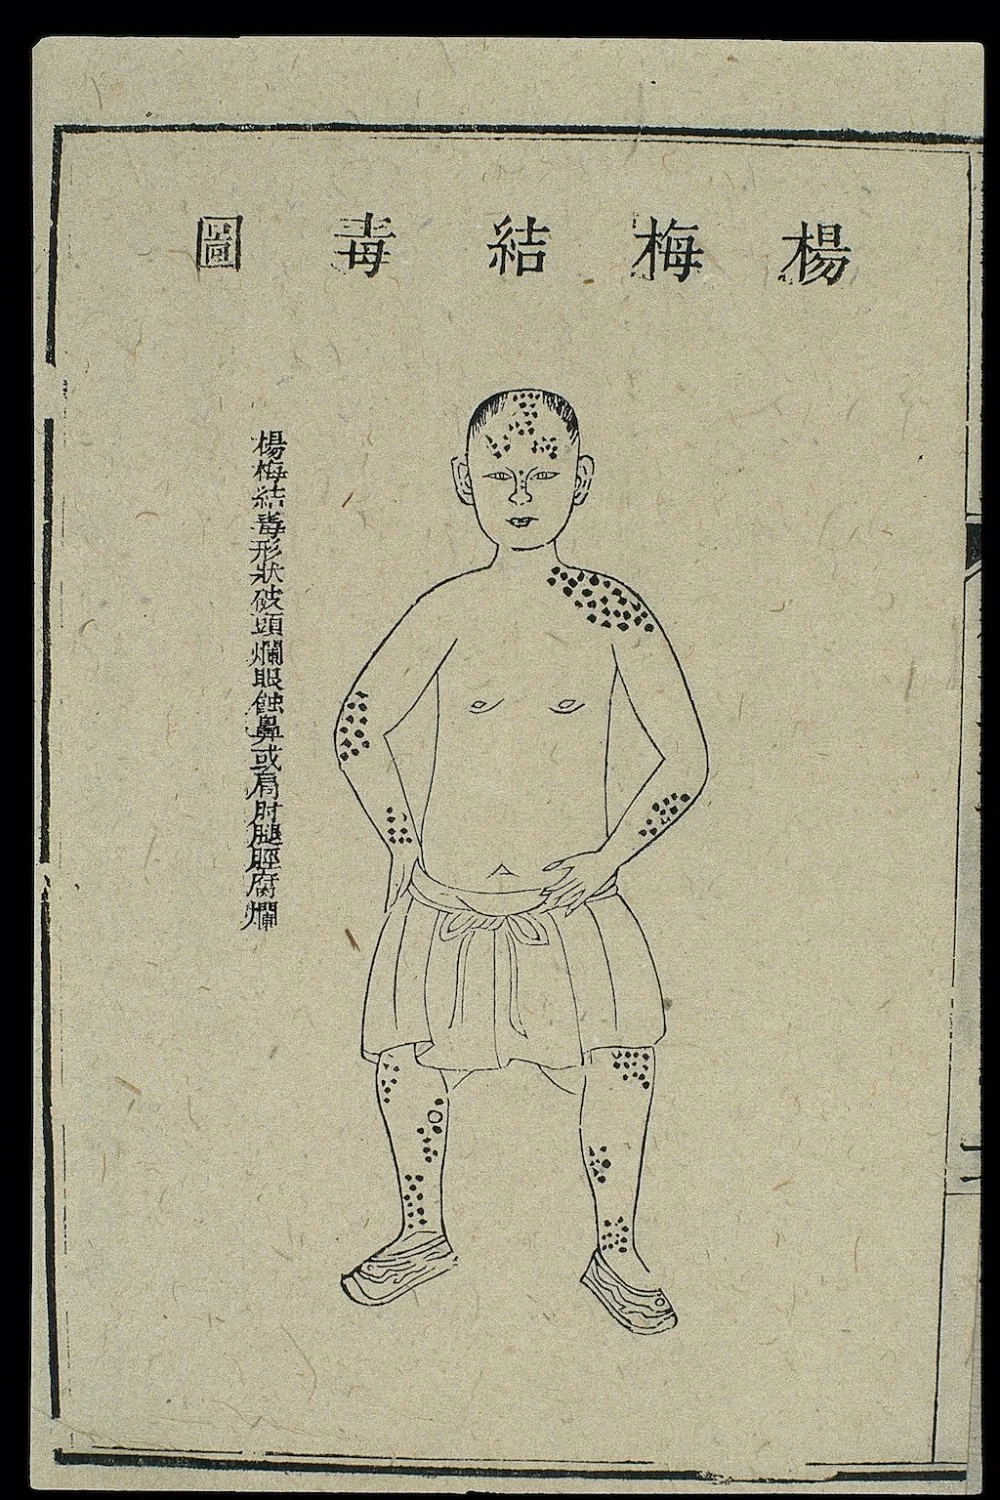 Симптомы сифилиса в китайском медицинском трактате. 18 век/Wikimedia commons